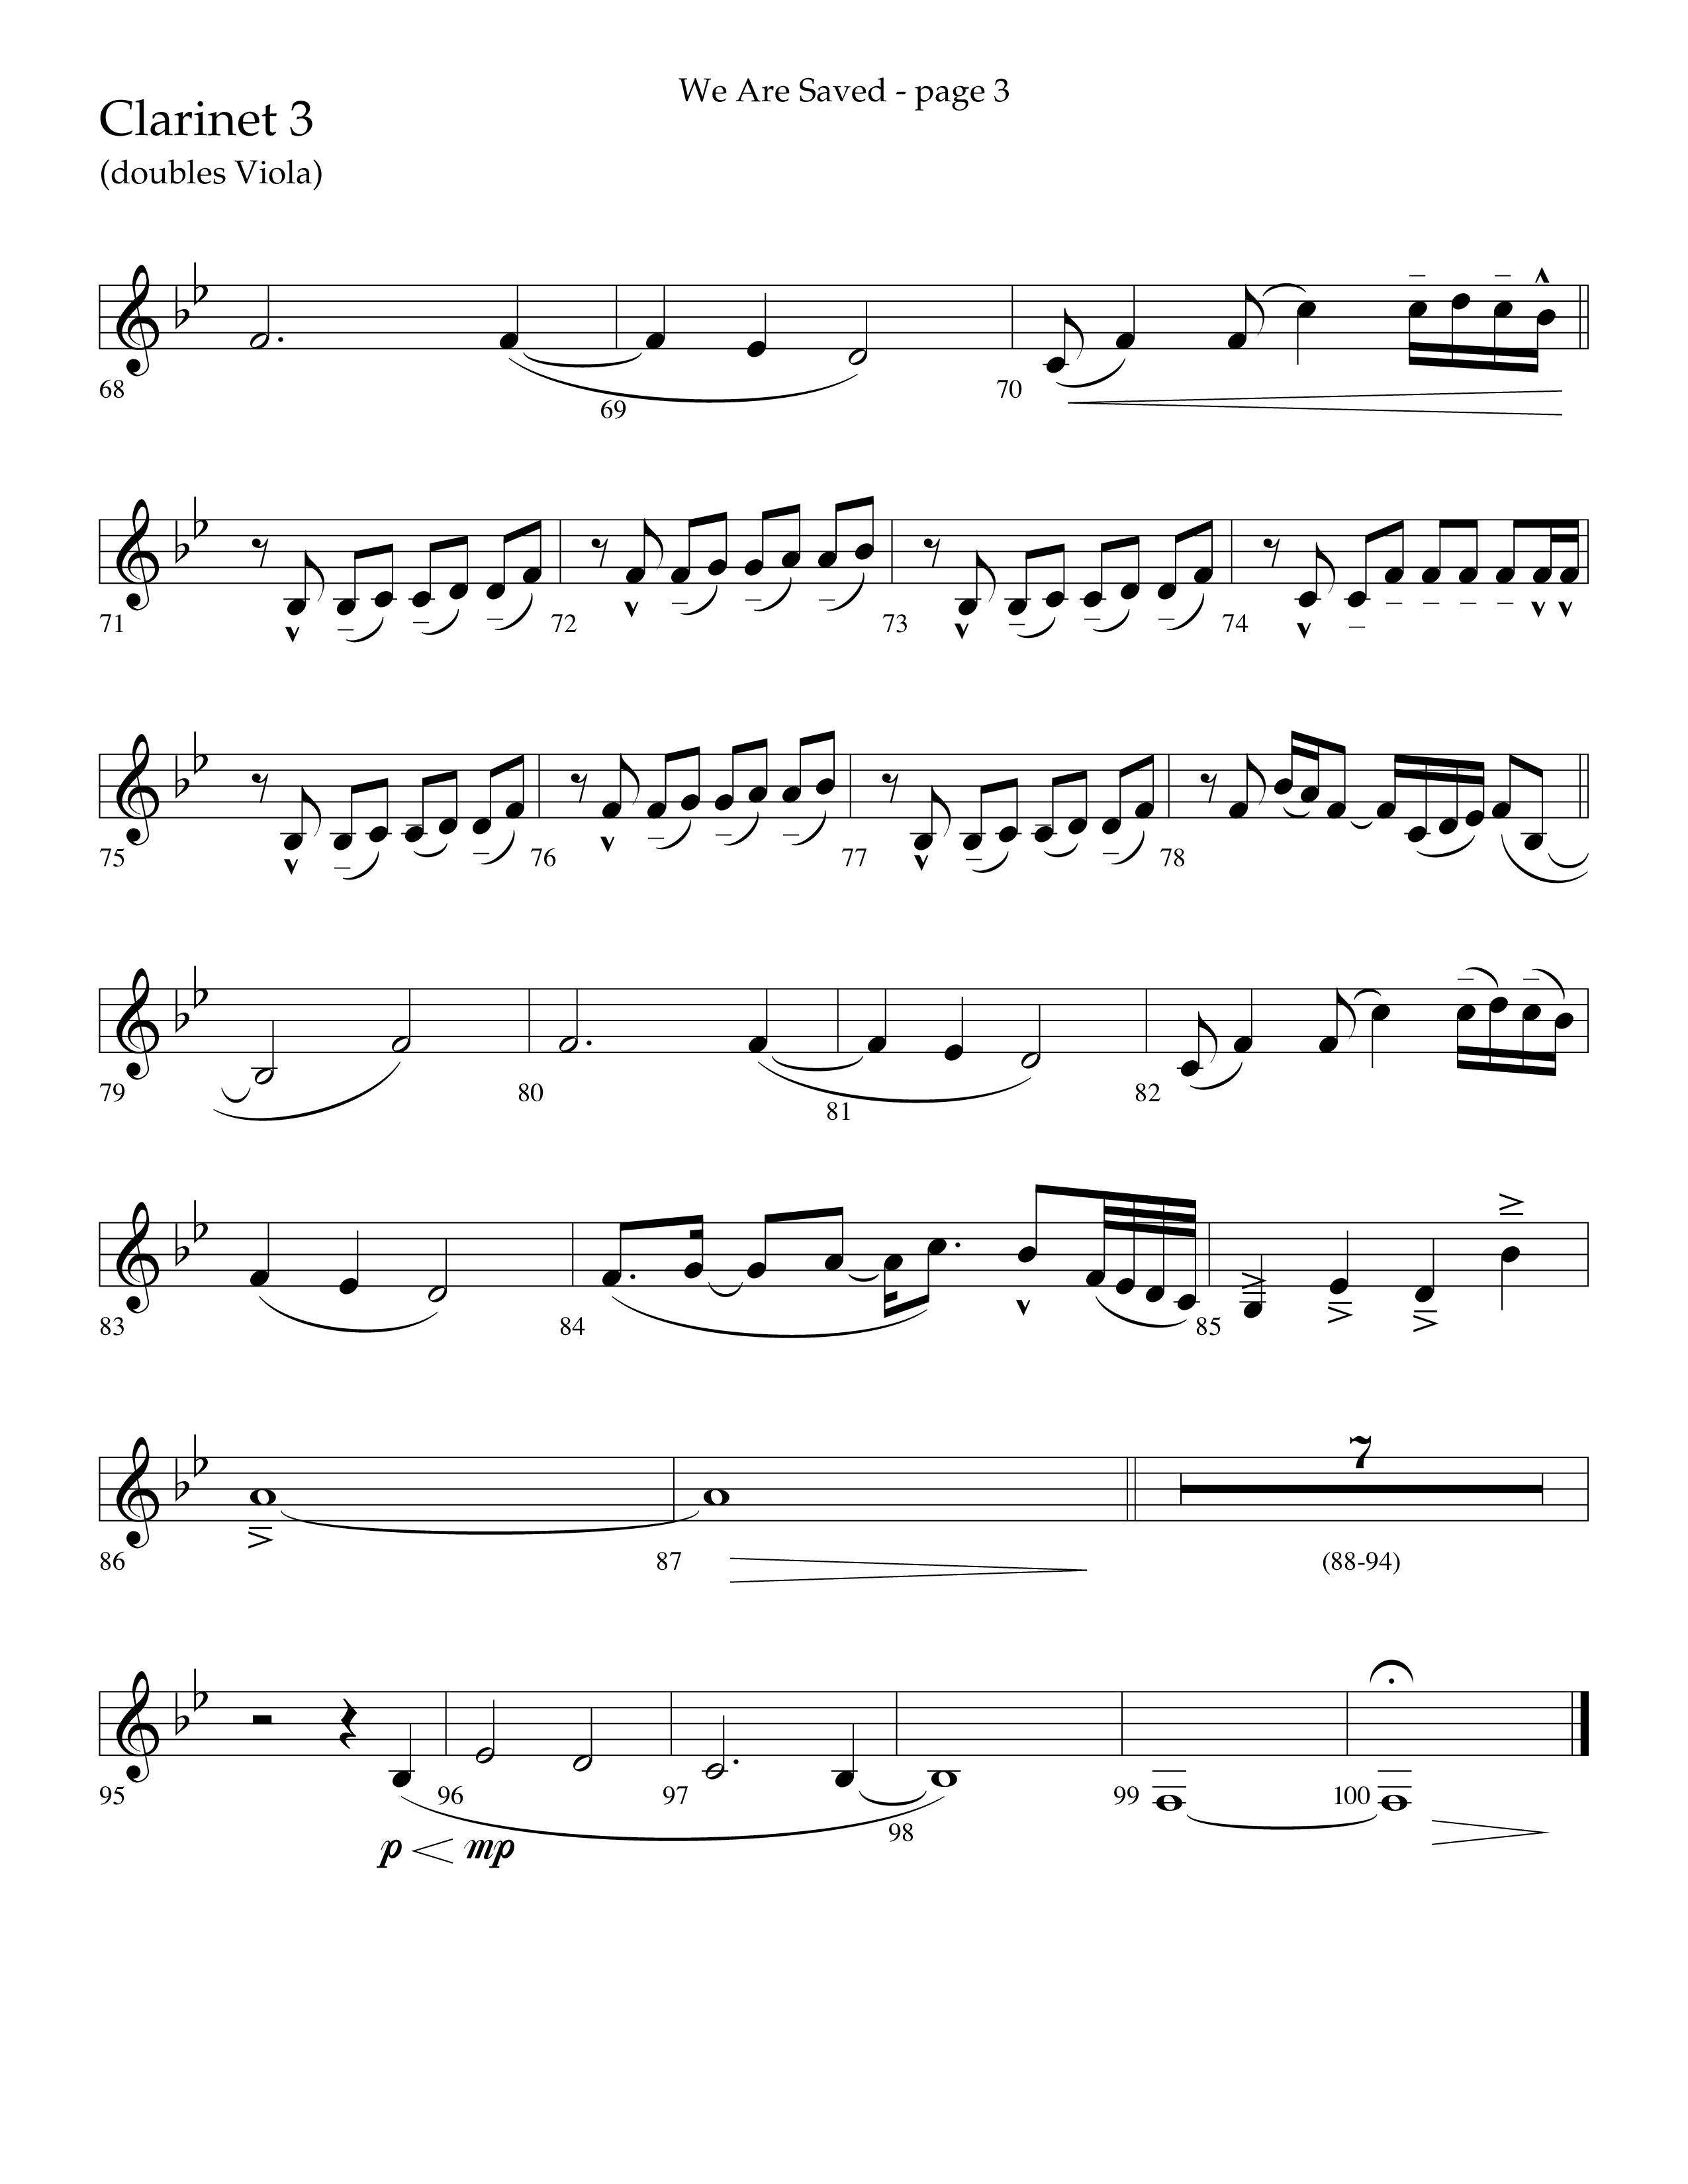 We Are Saved (Choral Anthem SATB) Clarinet 3 (Lifeway Choral / Arr. Cliff Duren)